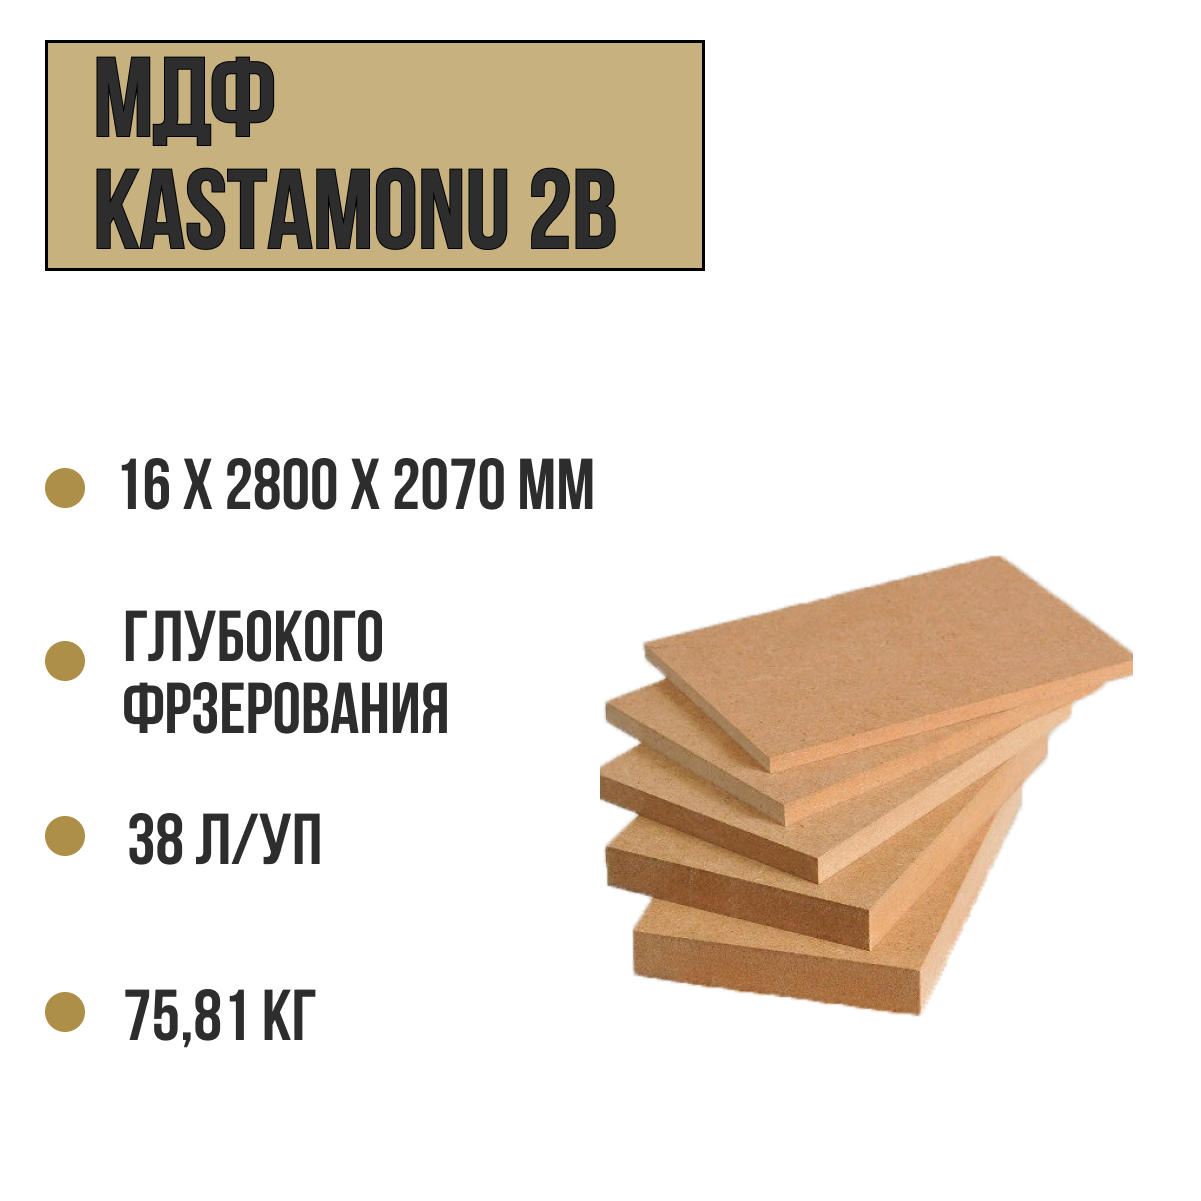 МДФ Kastamonu 2B - плита глубокого фрезерования ш2 16ммх2800х2070 (38л/уп, вес 75,81кг)